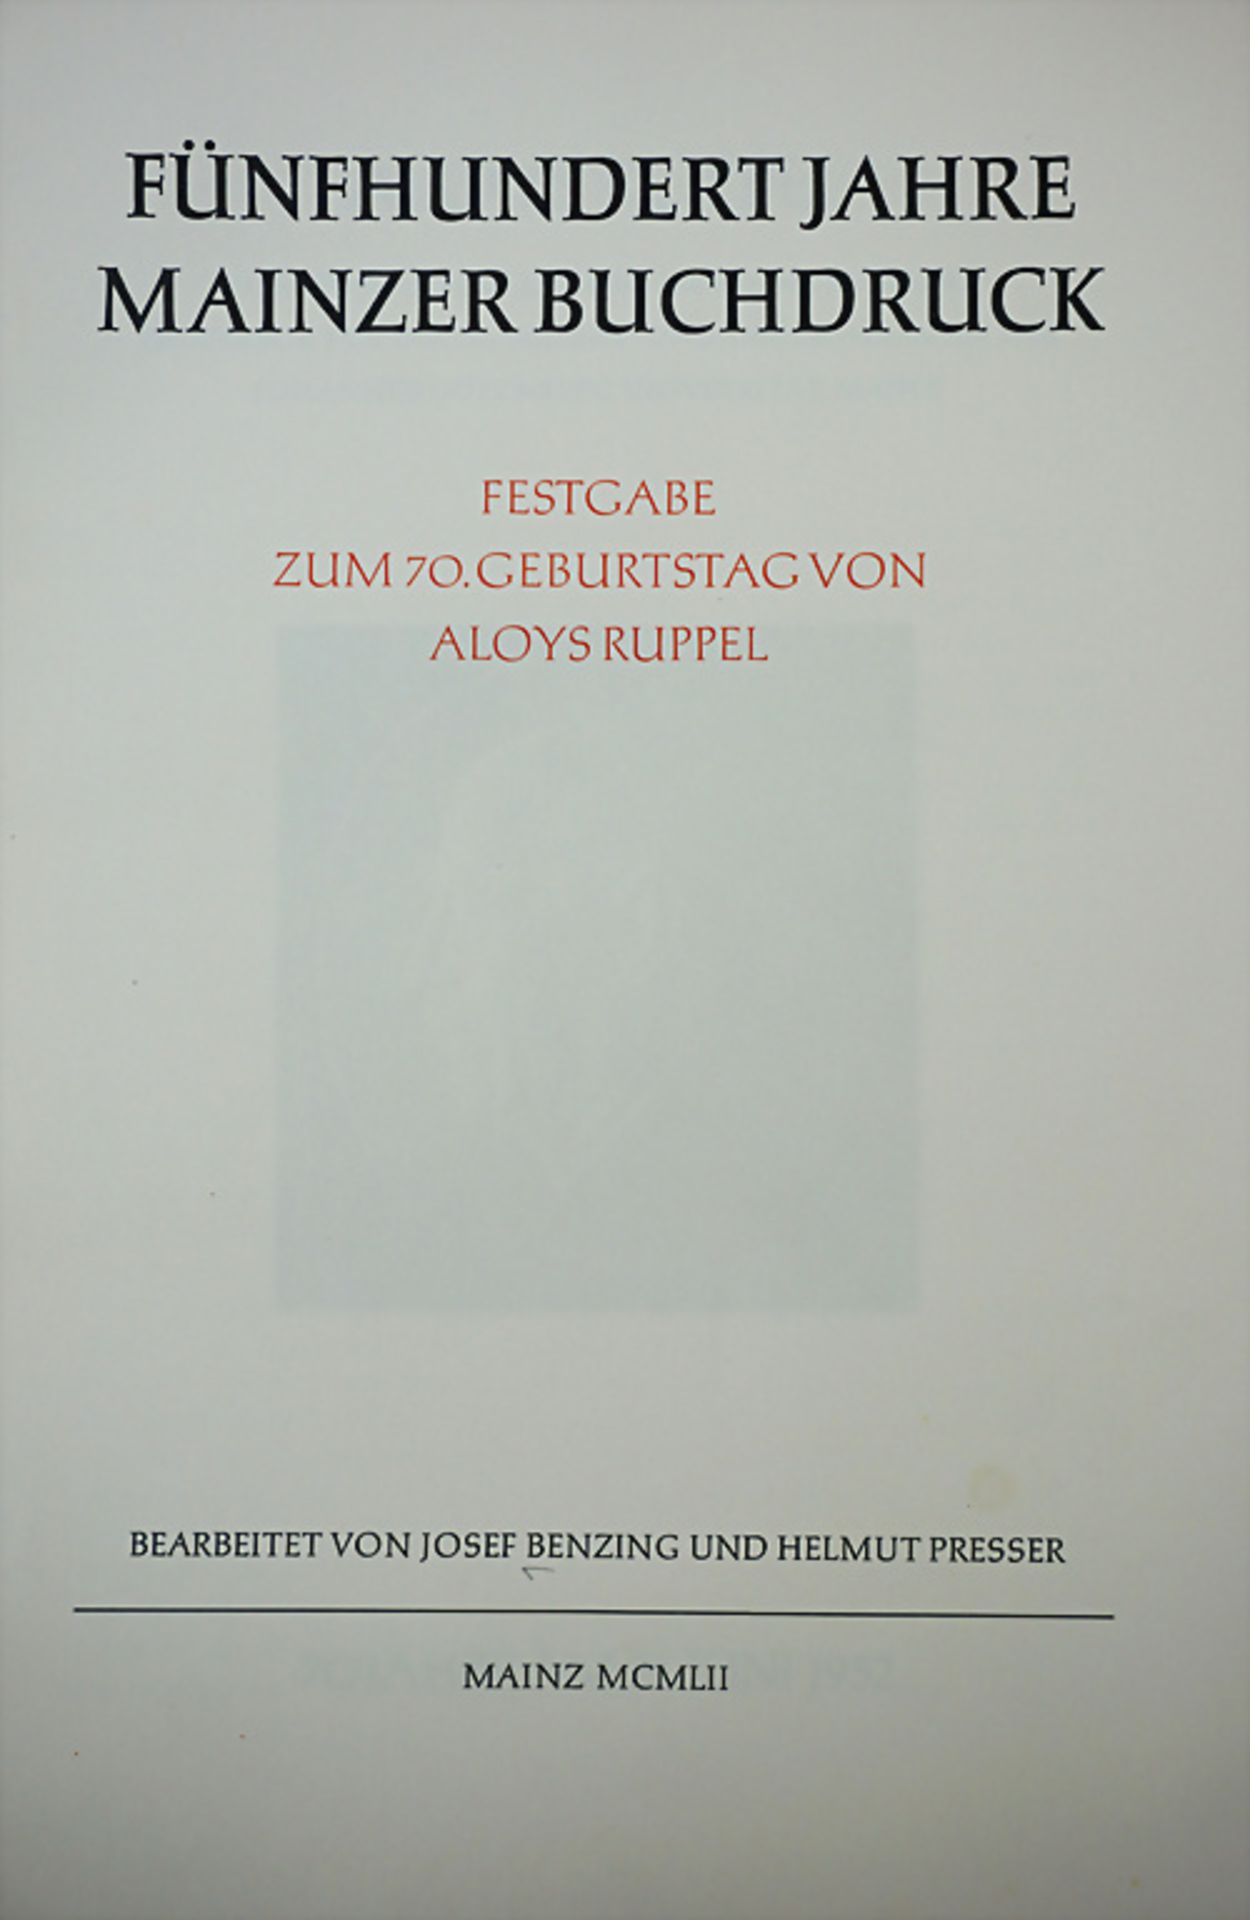 Josef Benzing, Helmut Presser: Mainzer Buchdruck, Mainz, 1952